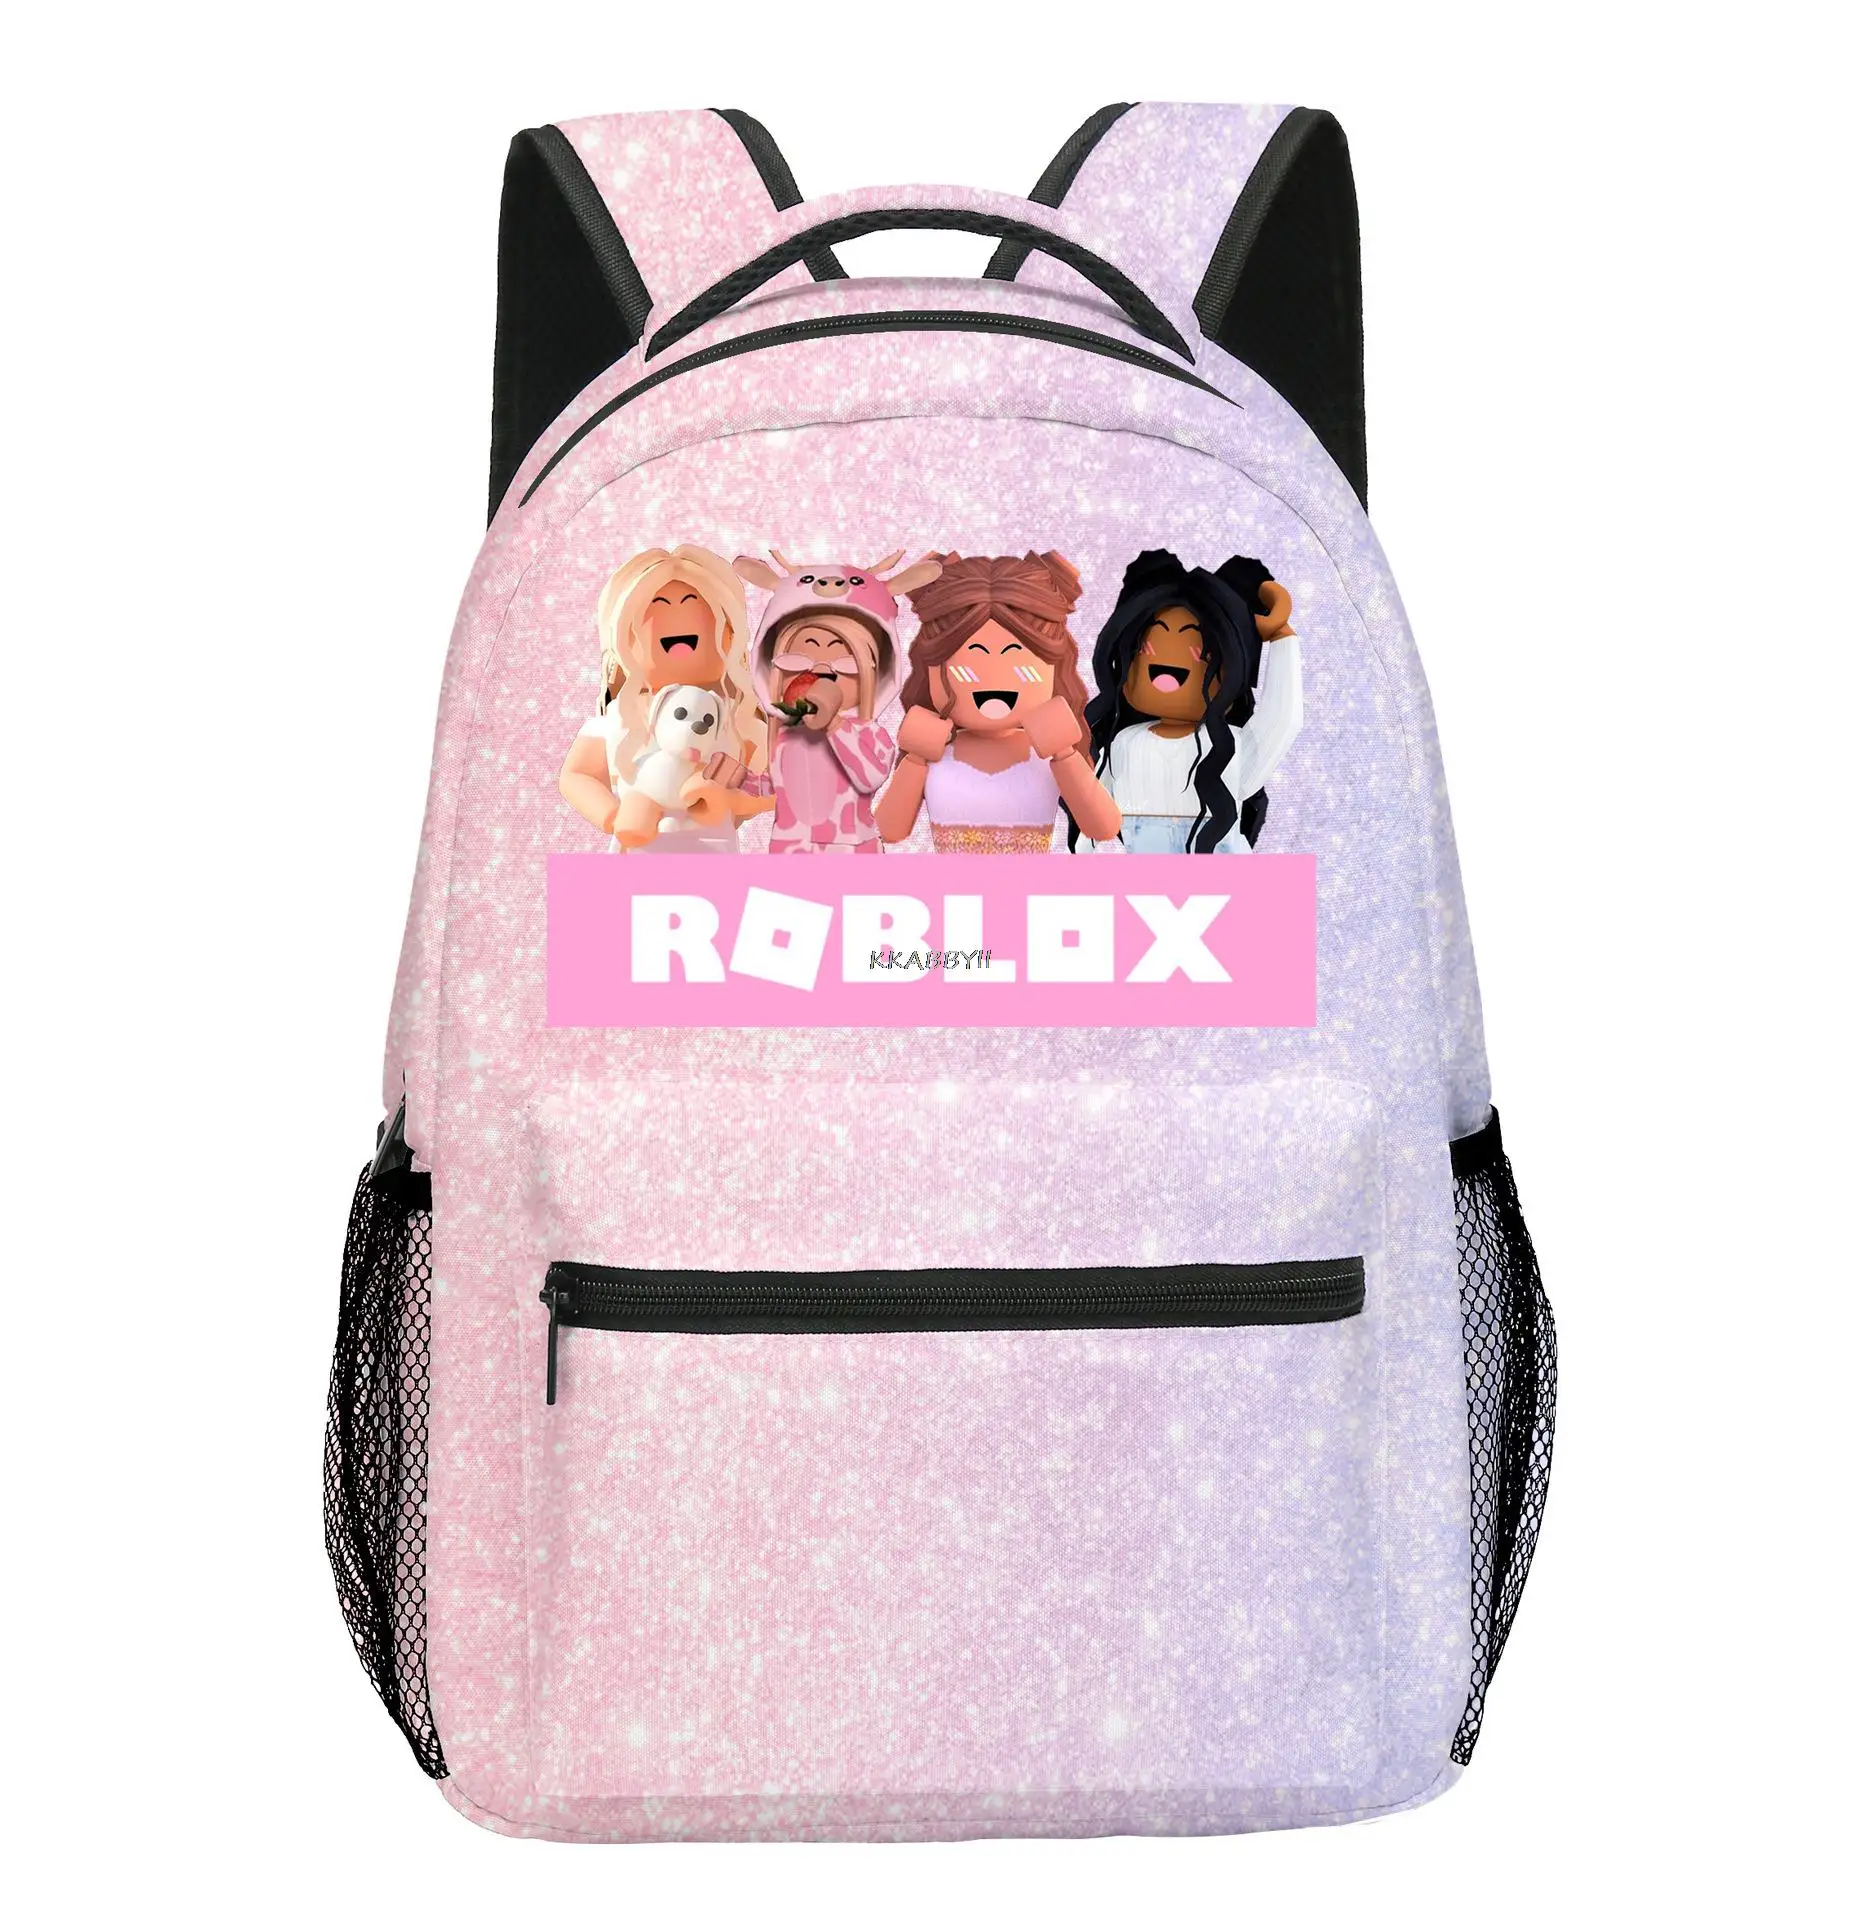 Roblox-Mochila de ombro para estudante masculino e feminino, bolsa